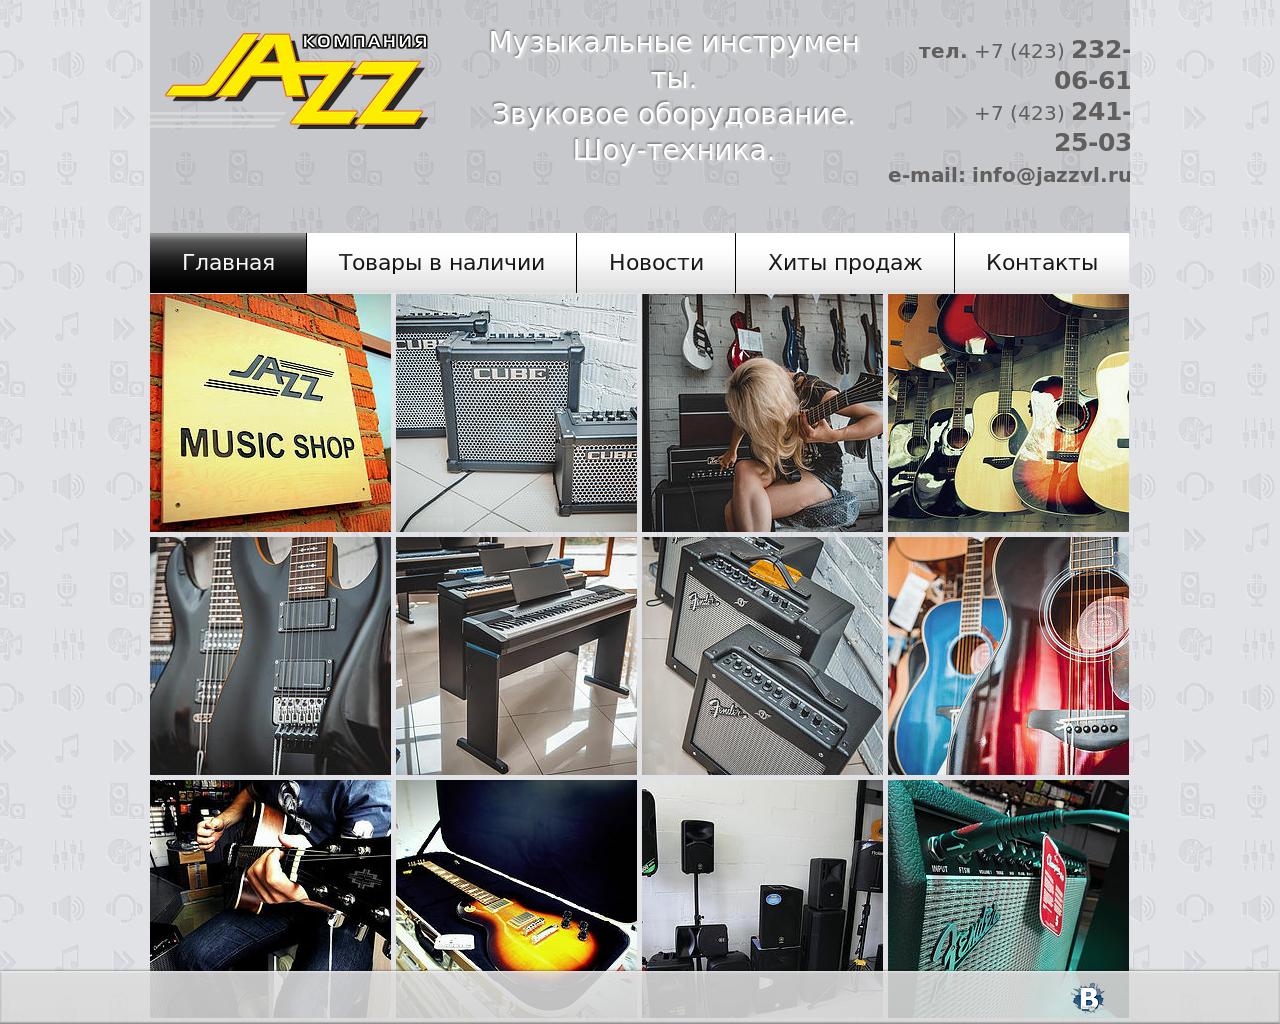 Изображение сайта jazzvl.ru в разрешении 1280x1024